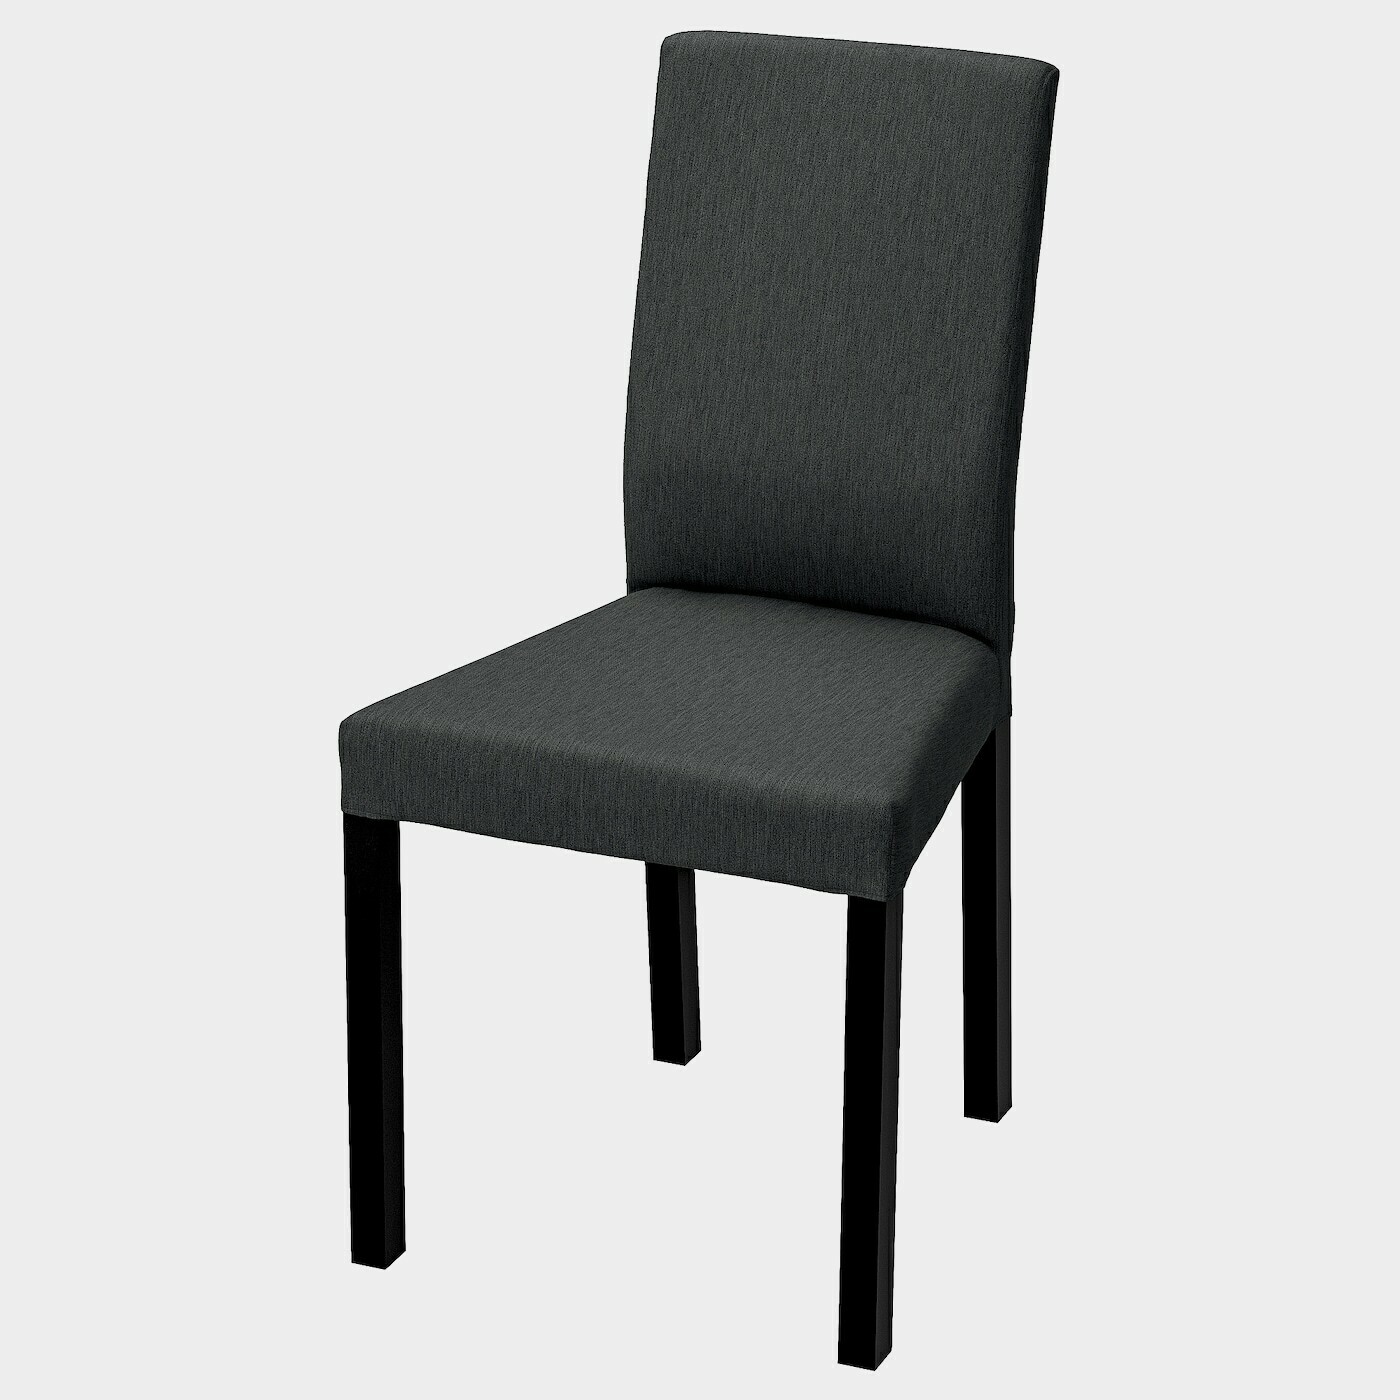 KÄTTIL Stuhl  -  - Möbel Ideen für dein Zuhause von Home Trends. Möbel Trends von Social Media Influencer für dein Skandi Zuhause.